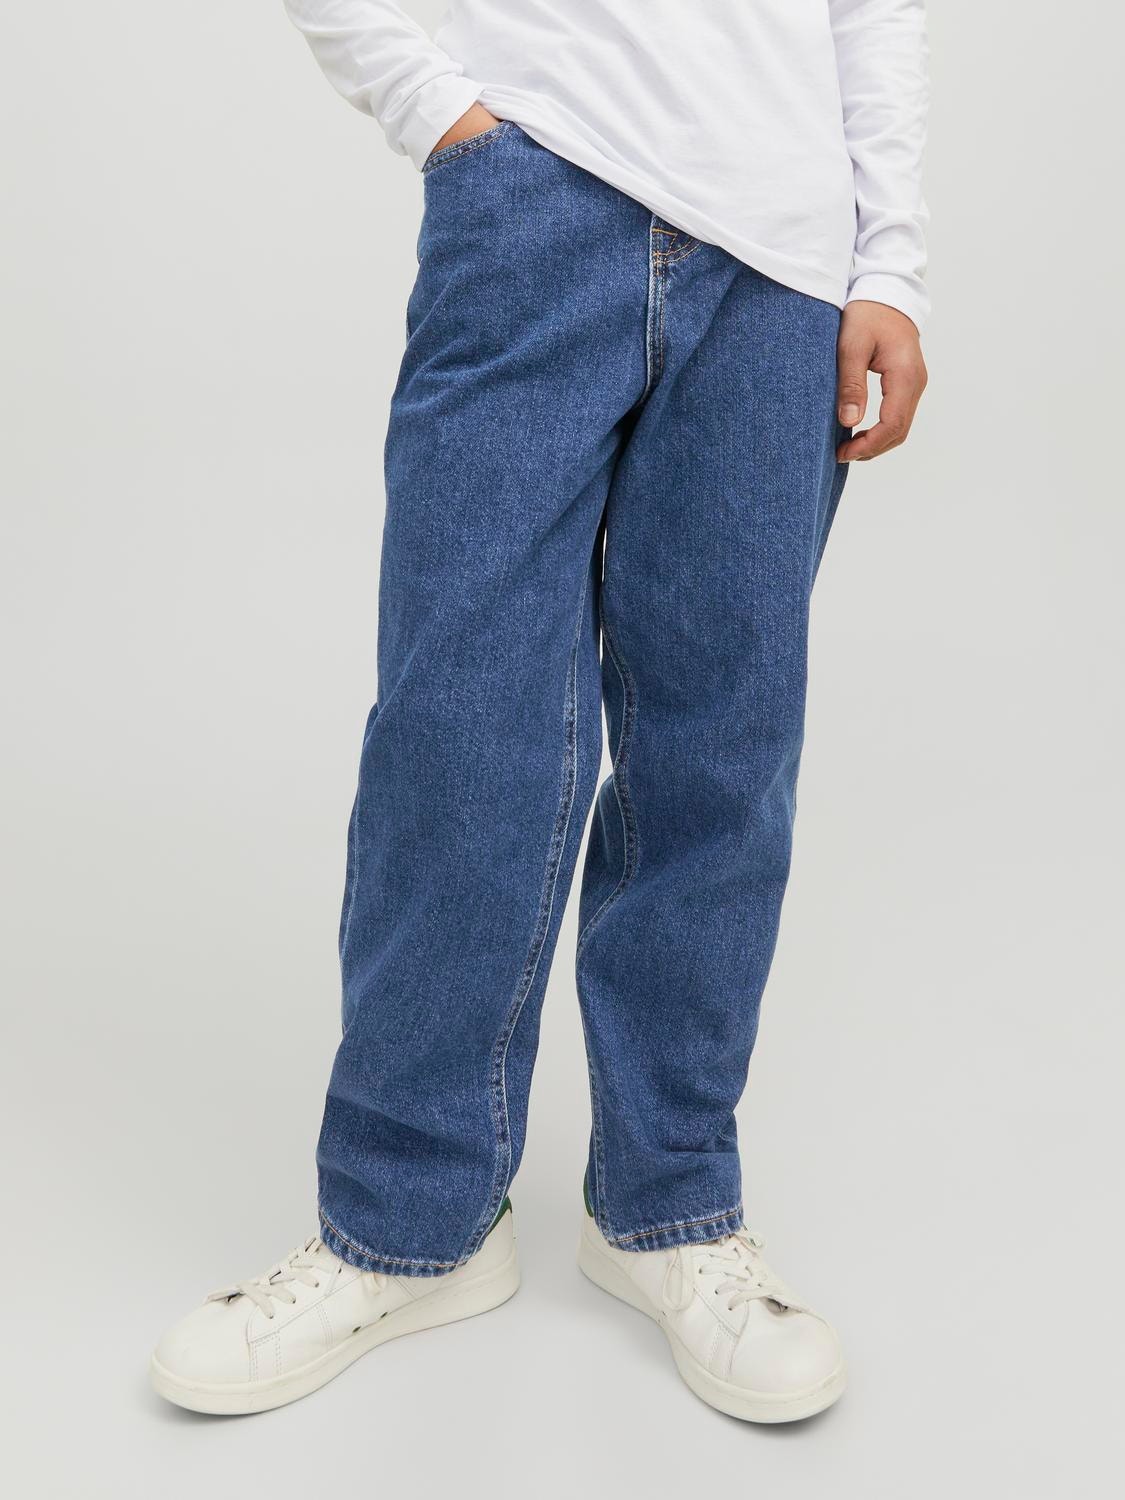 Jack & Jones JJICHRIS JJORIGINAL MF 3459 Relaxed Fit Jeans For boys -Blue Denim - 12245889